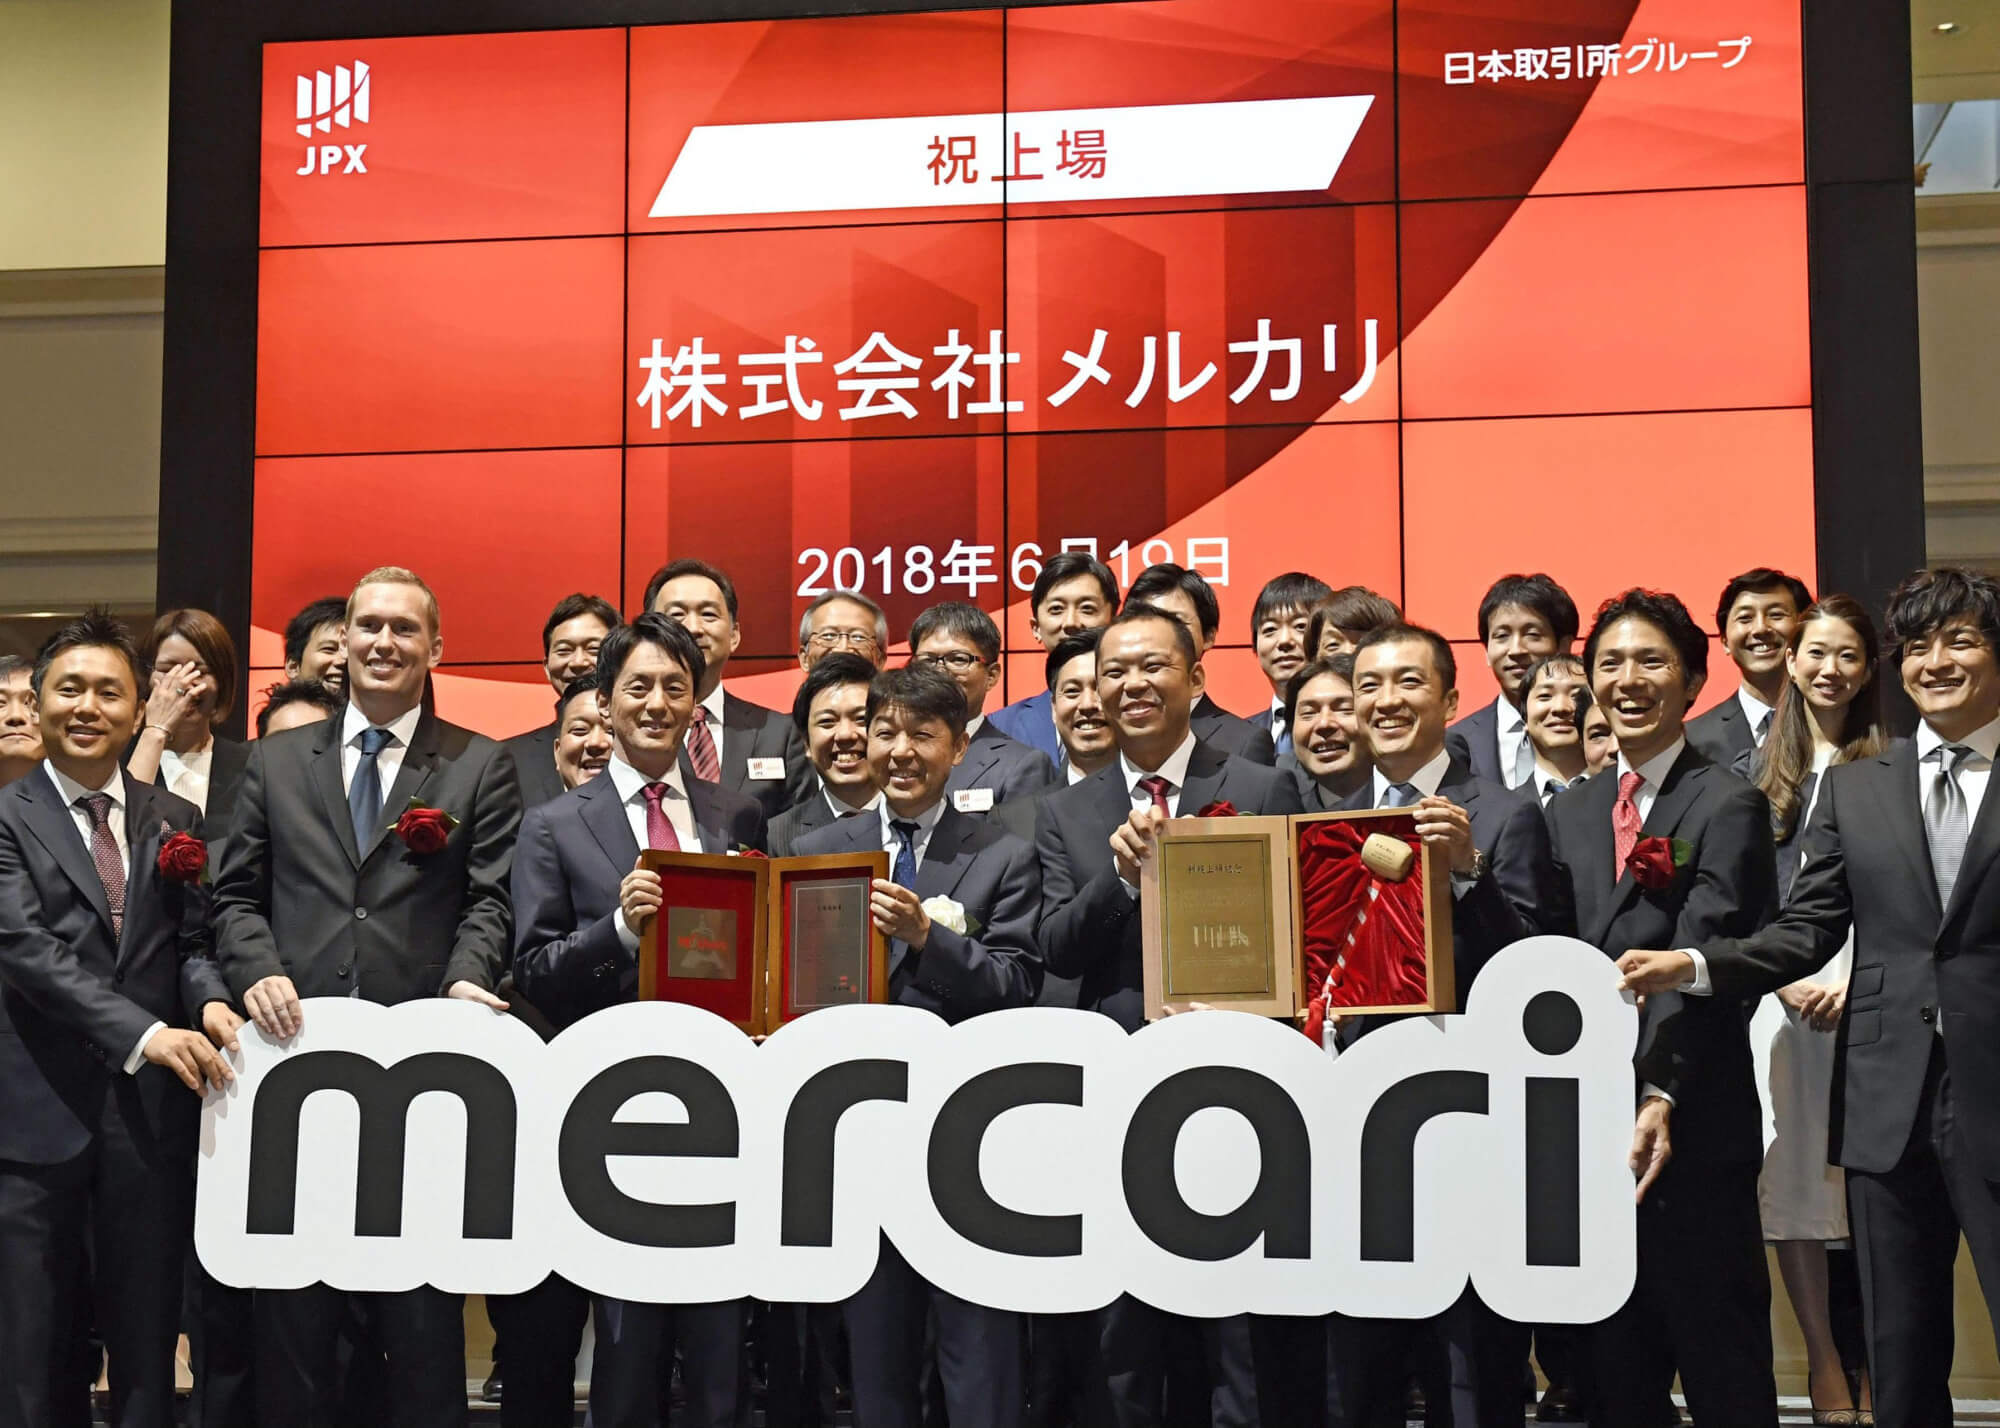 Buy from Mercari Japan with ZenMarket!